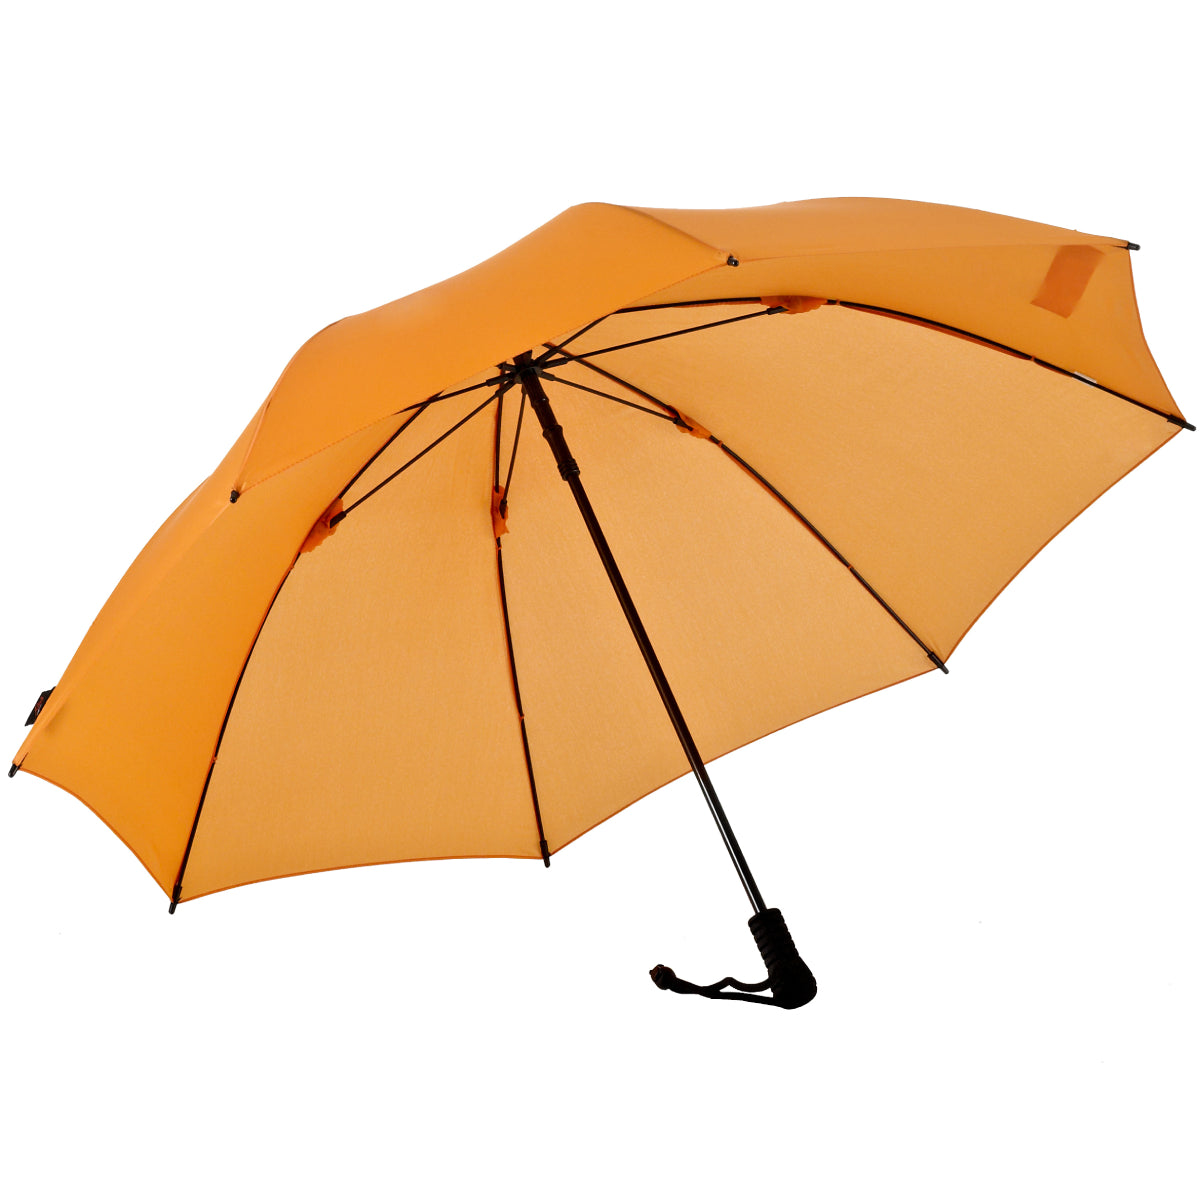 Umbrella Swing USA EuroSCHIRM EuroSCHIRM Liteflex –